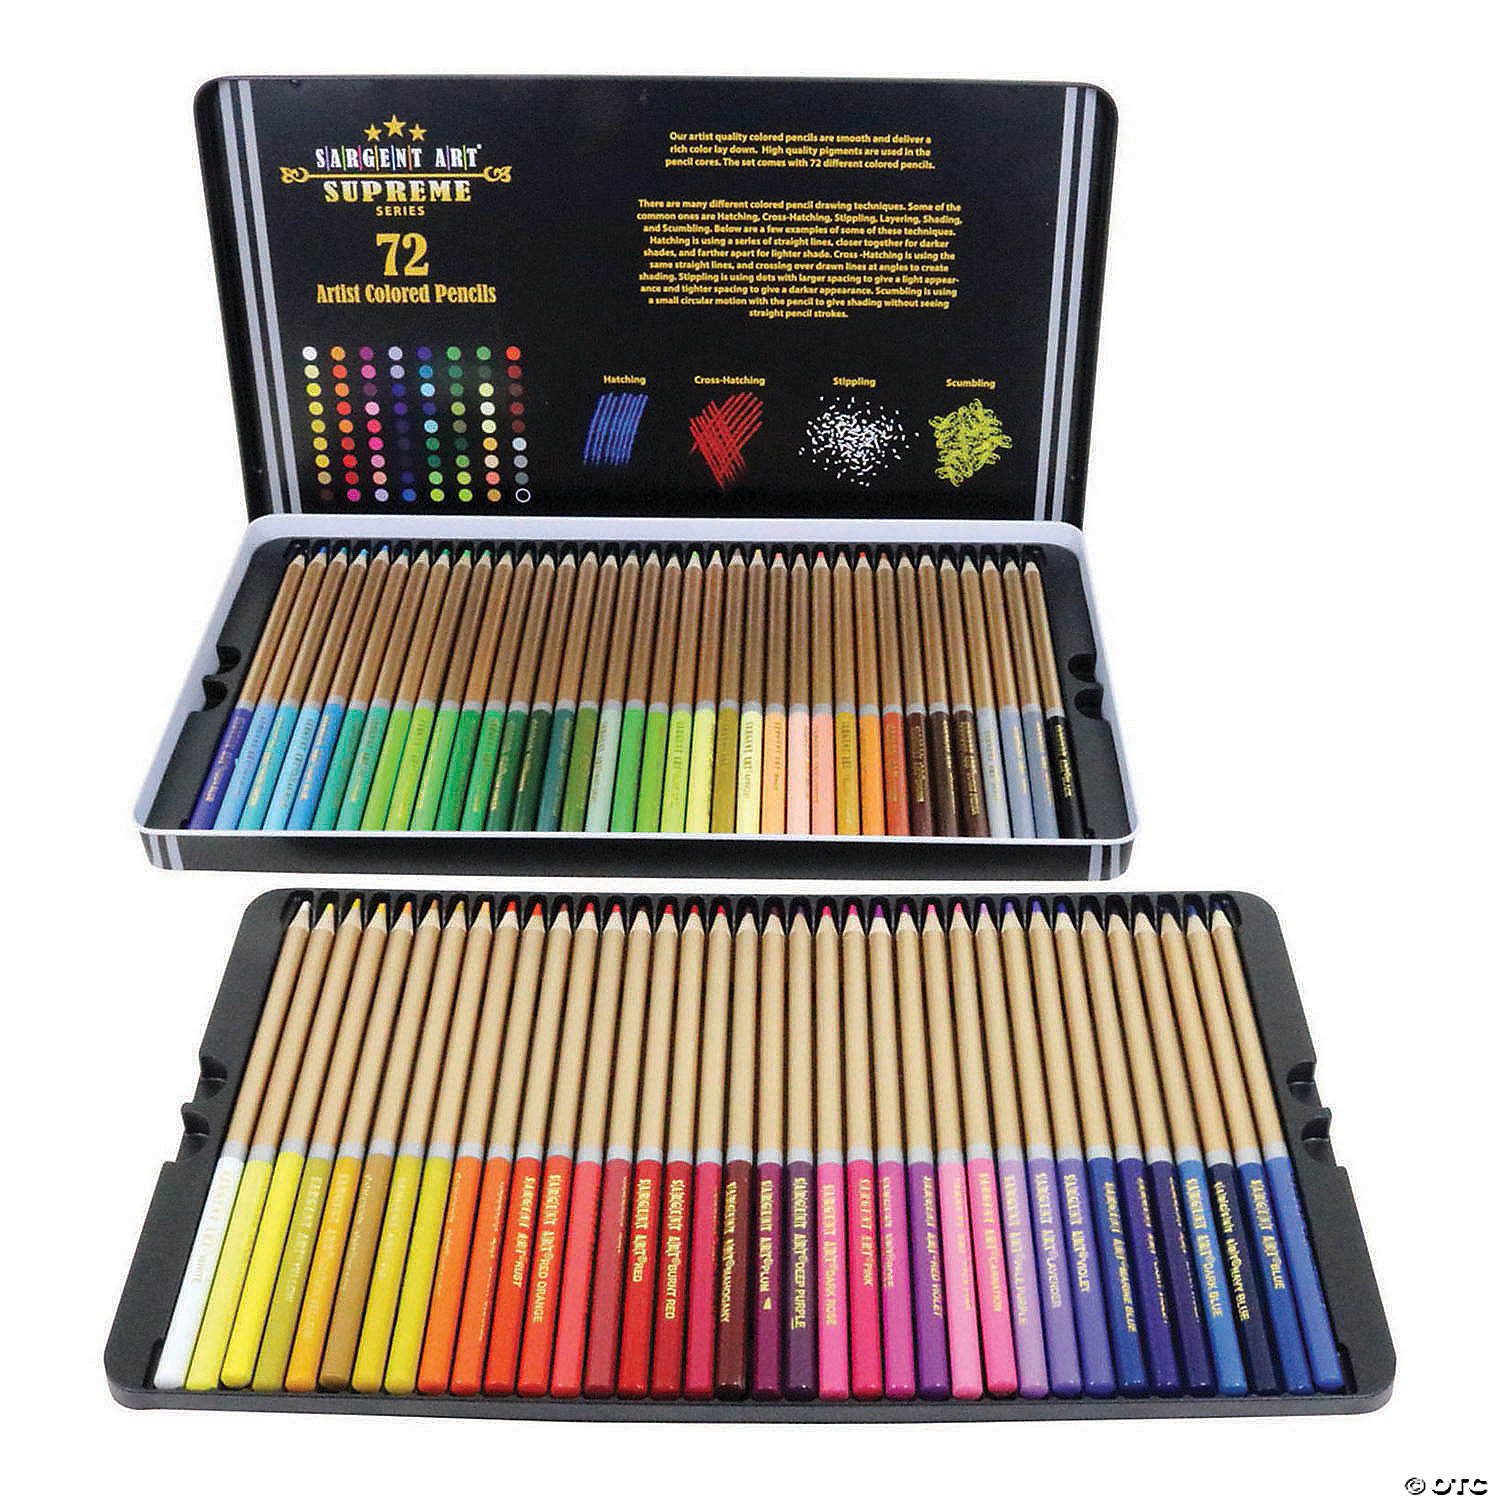 Colored Pencils, 72 Colors, Colored Pencils For Kids Color Pencil Set  Colored Pencils Bulk Adult Art Pencils Lapices De Colores Map Pencils